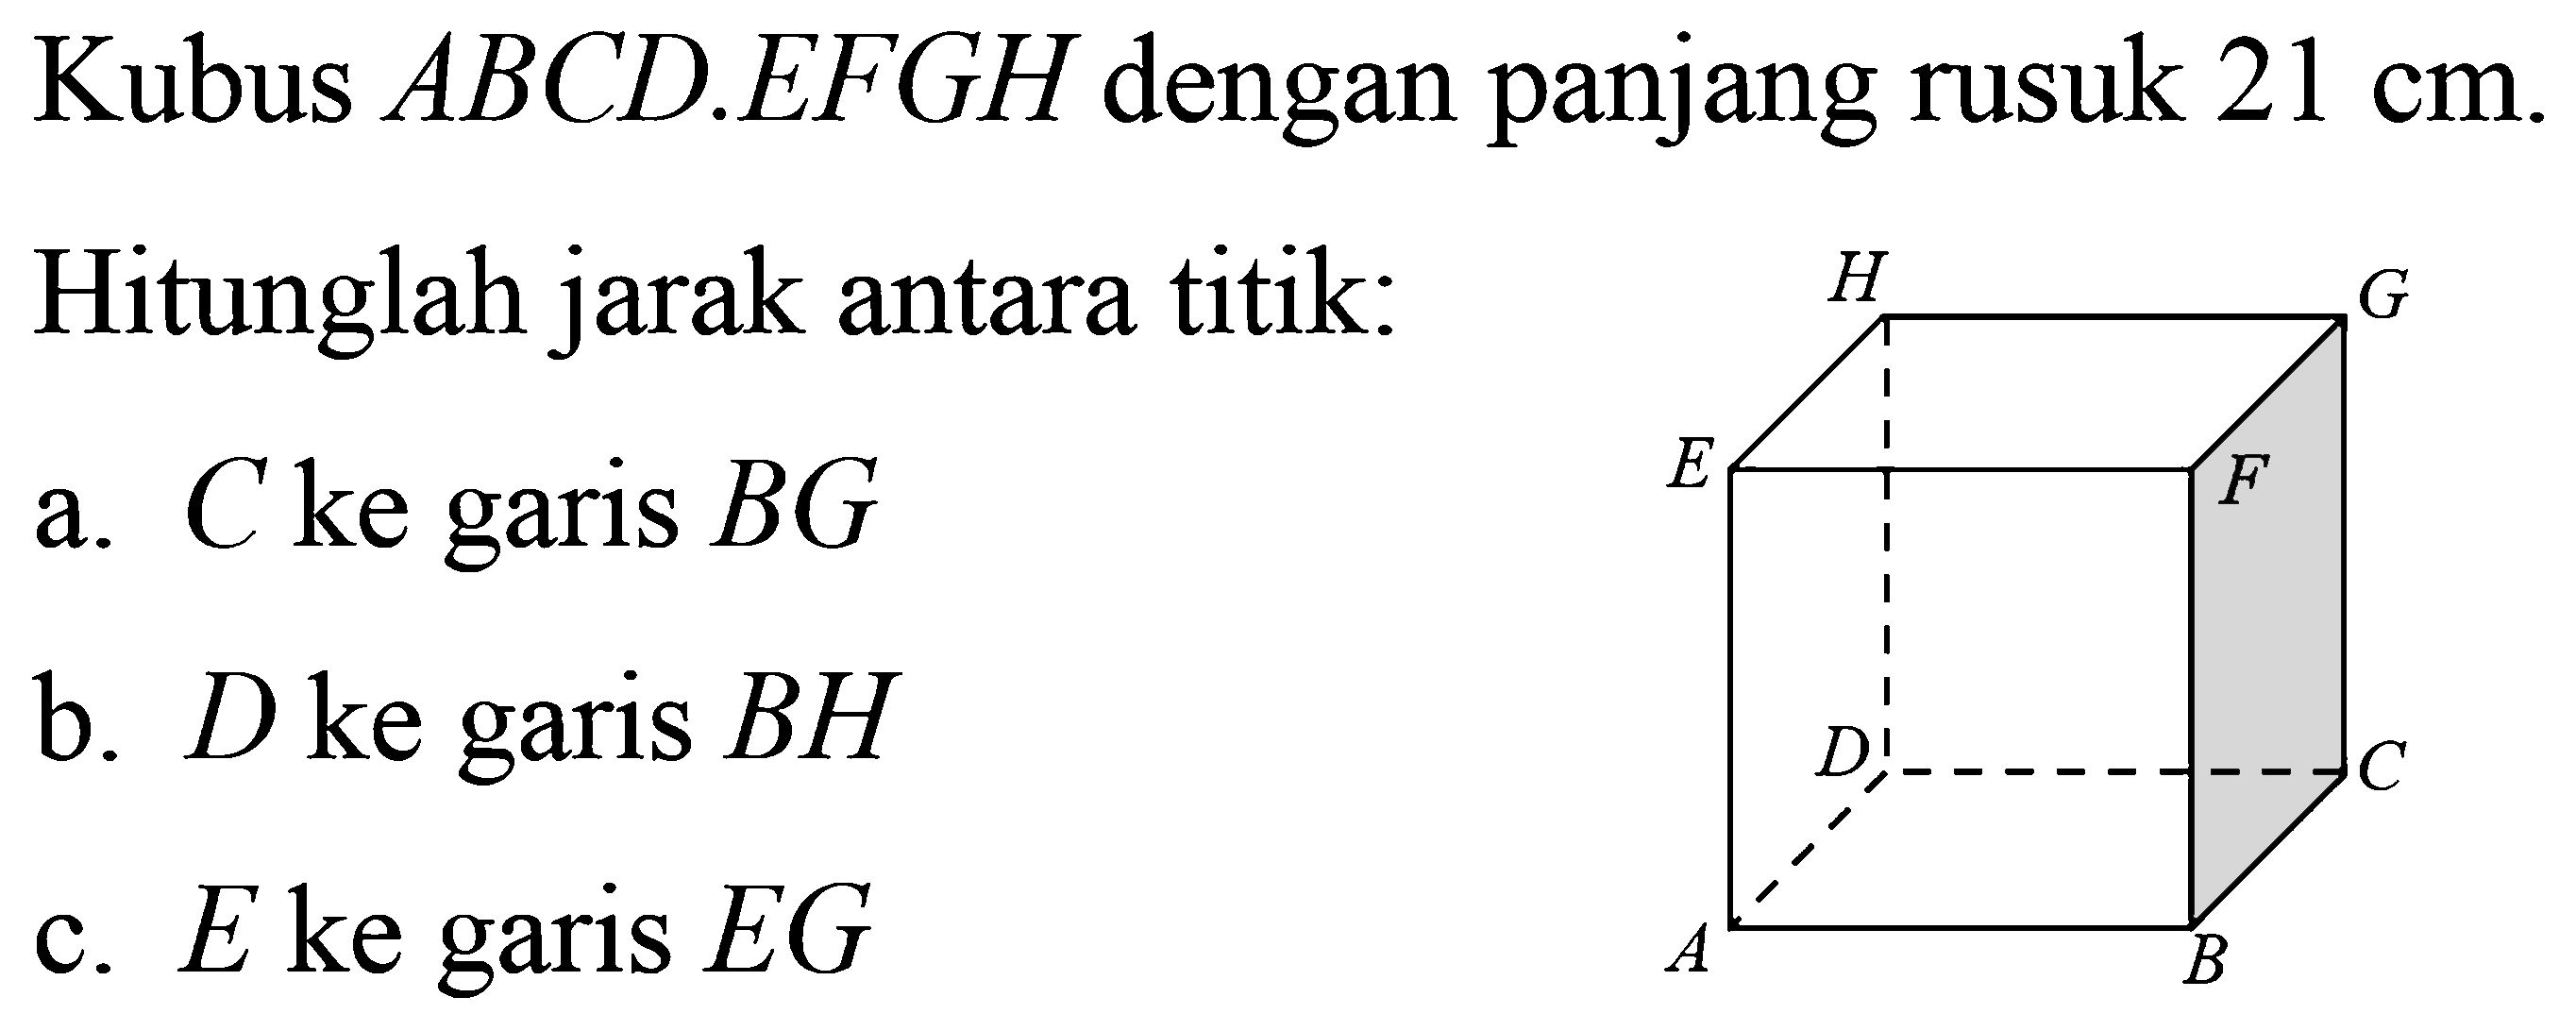 Kubus ABCD.EFGH dengan panjang rusuk 21 cm. Hitunglah jarak antara titik: a. C ke garis BG b. D ke garis BH c. E ke garis EG ABCDEFGH